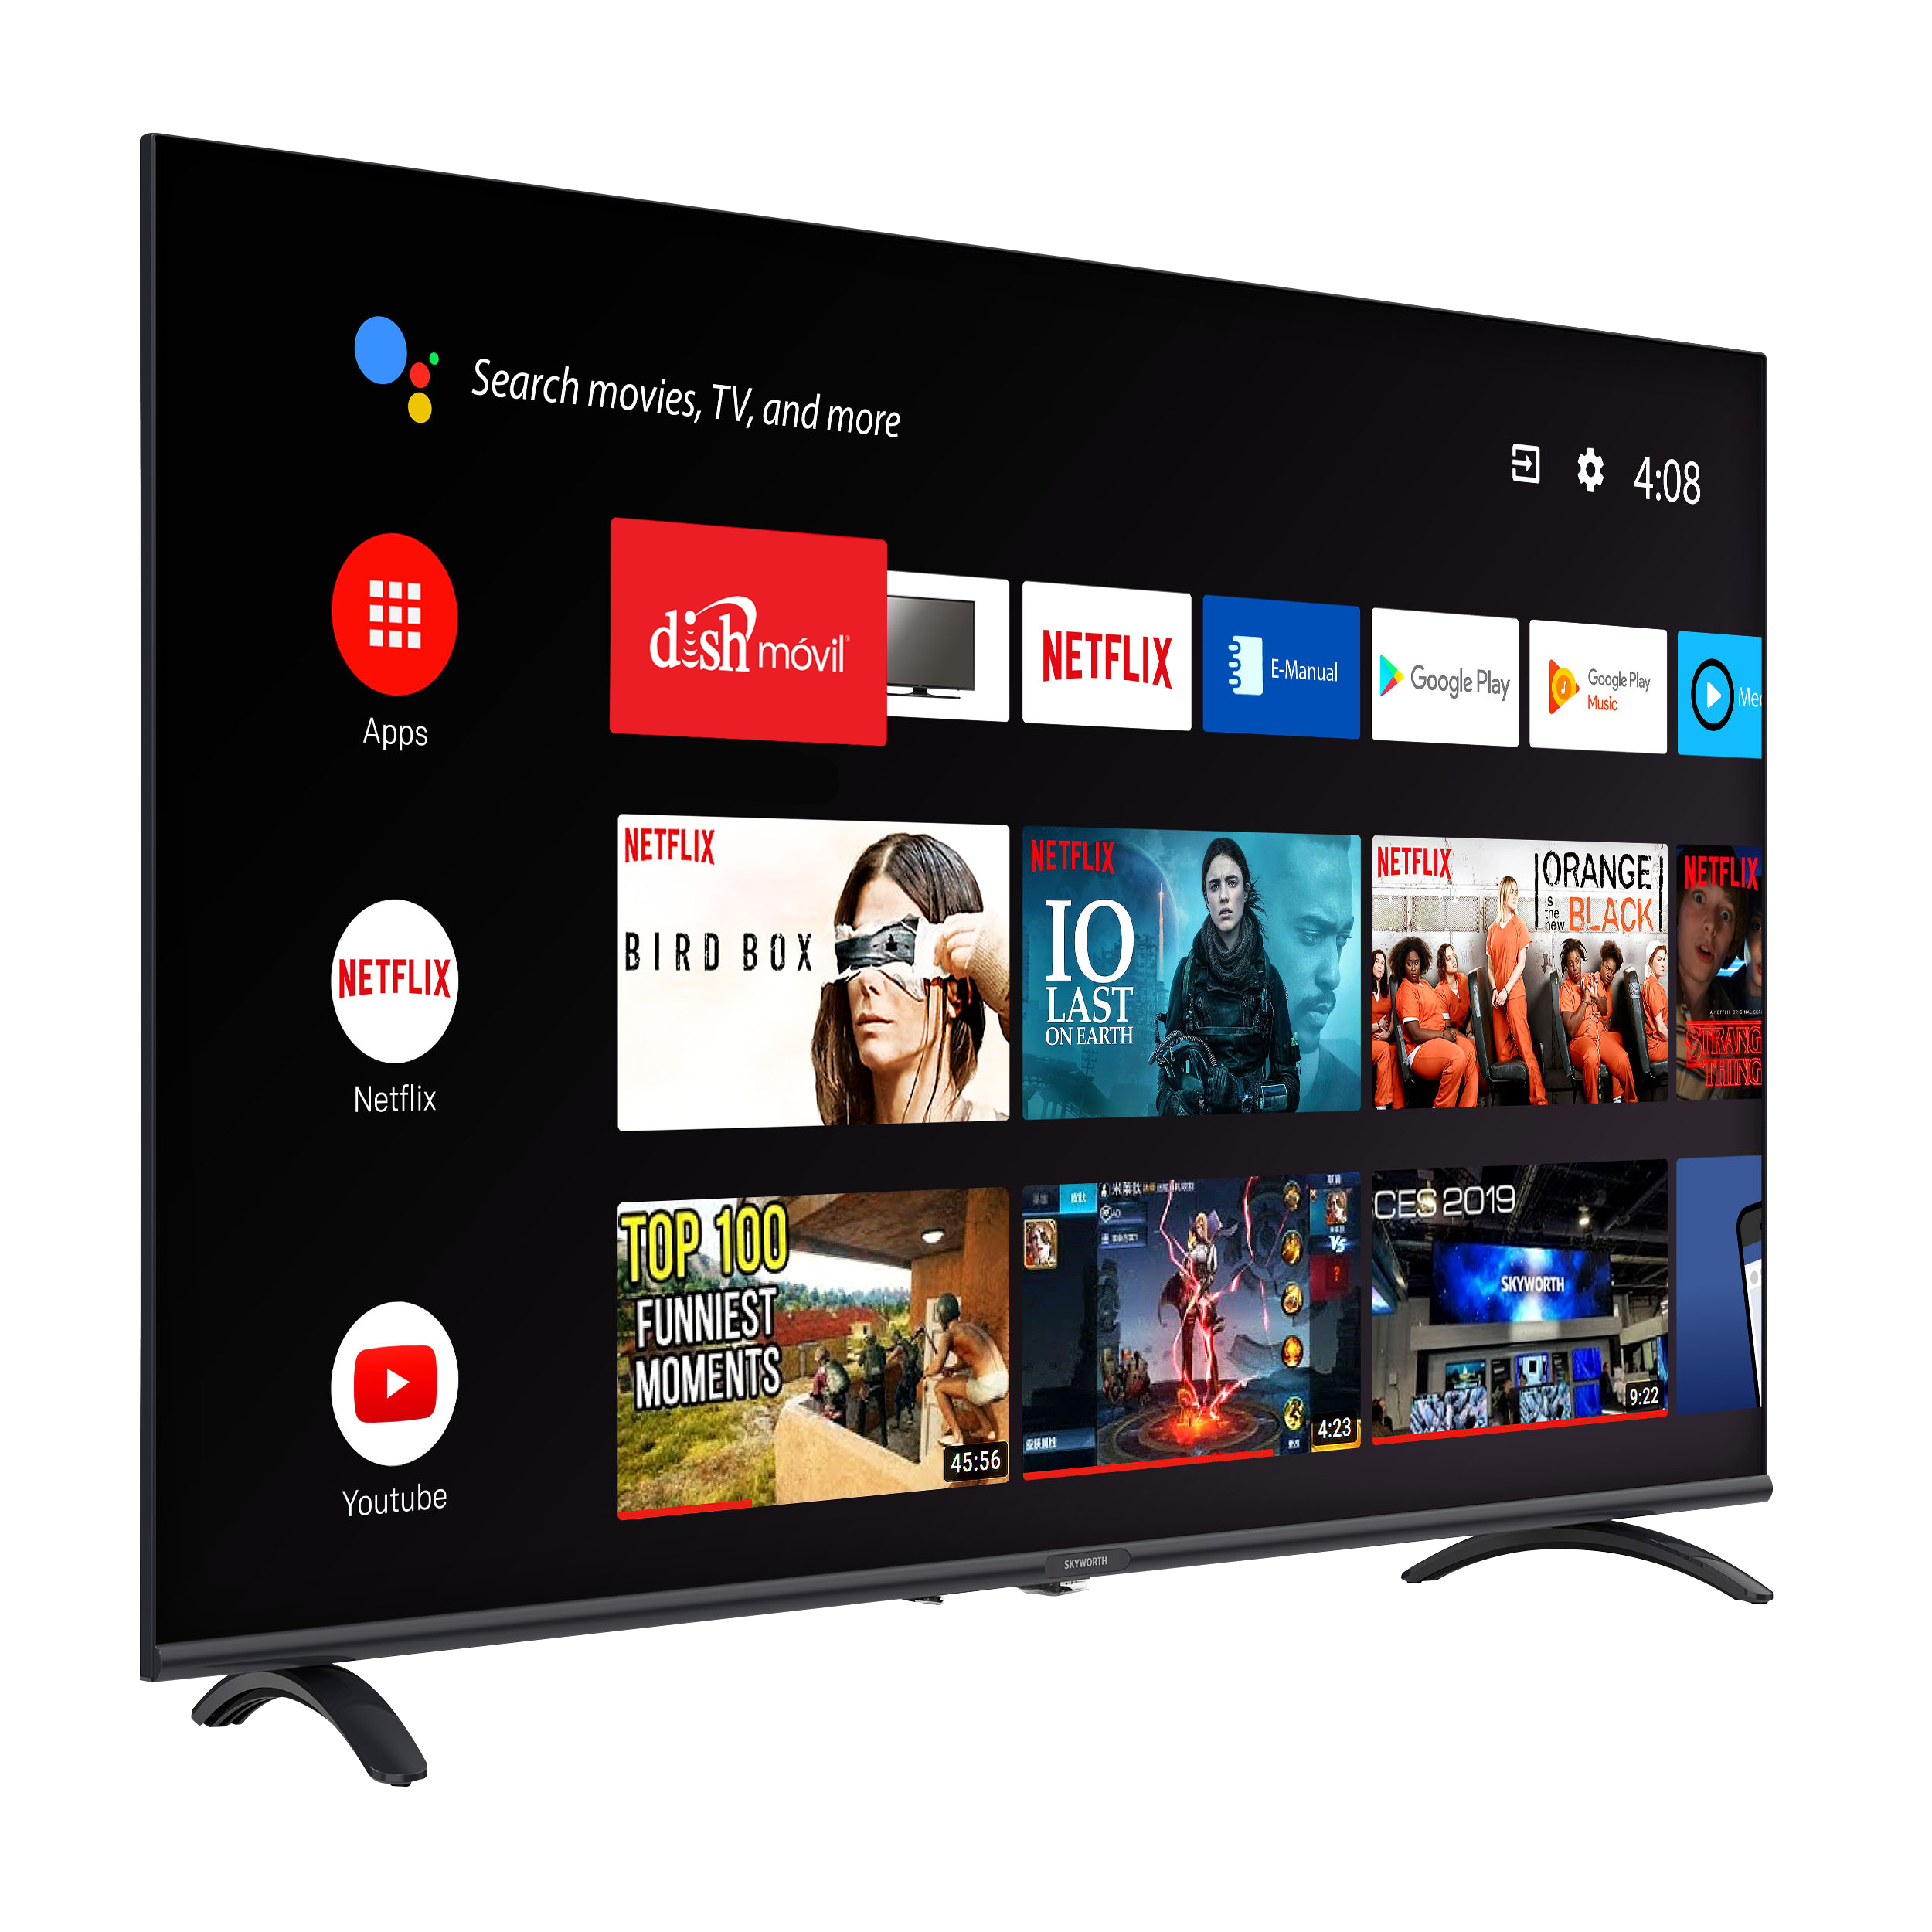 Televisor Skyworth 32″ SMART, LED Android TV con control remoto de